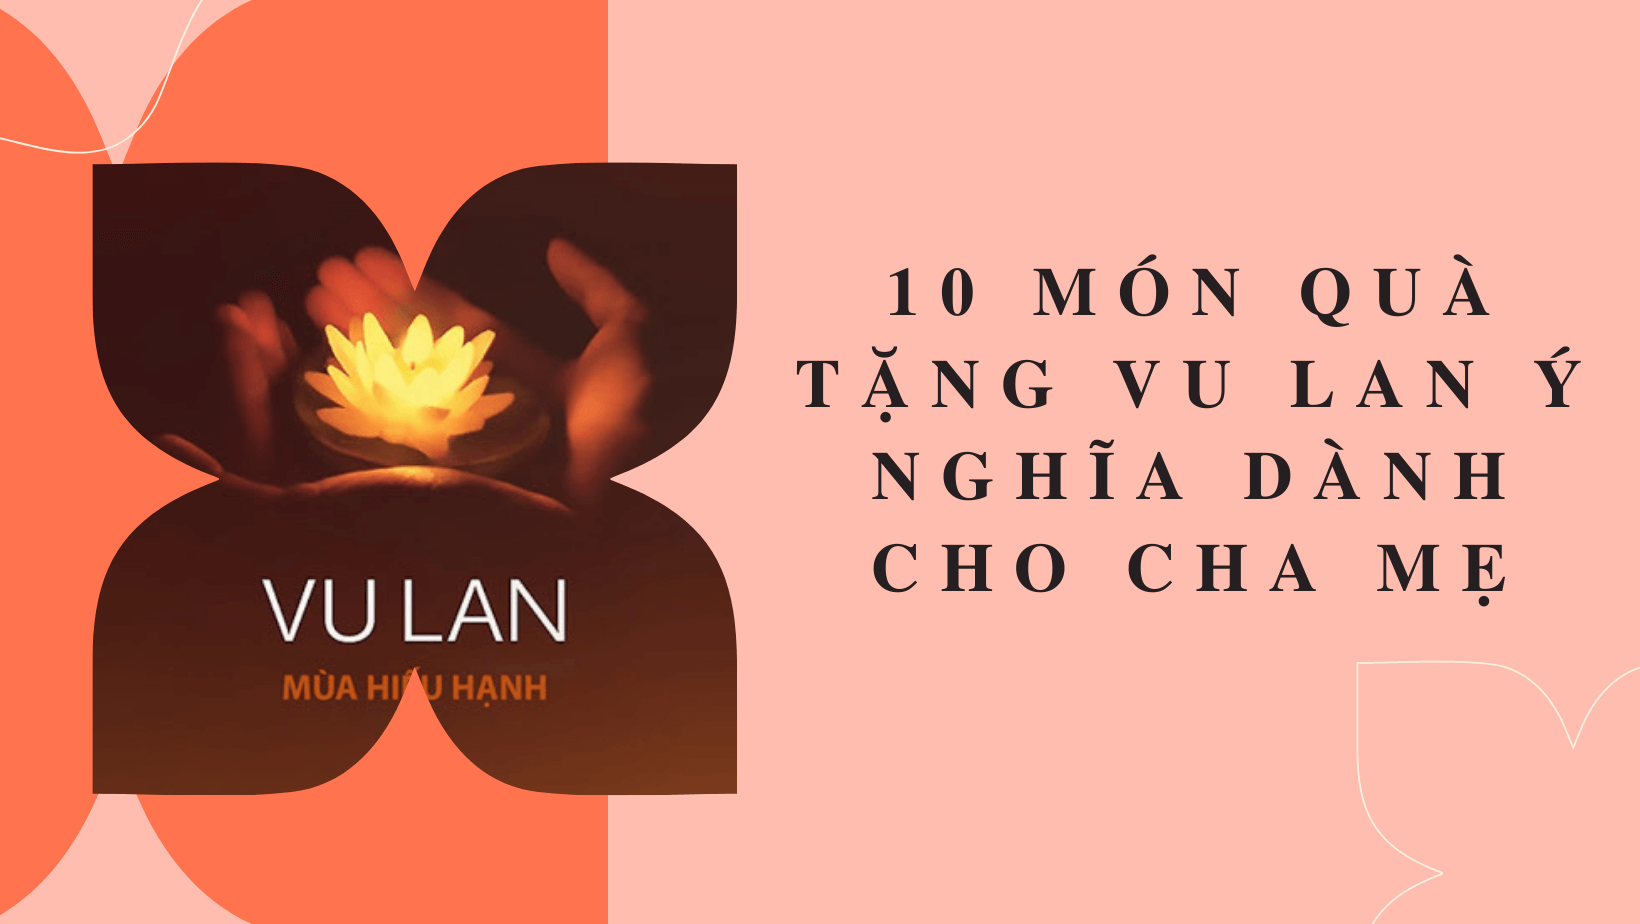 10 Món Quà Tặng Vu Lan Ý Nghĩa Dành Cho Cha Mẹ